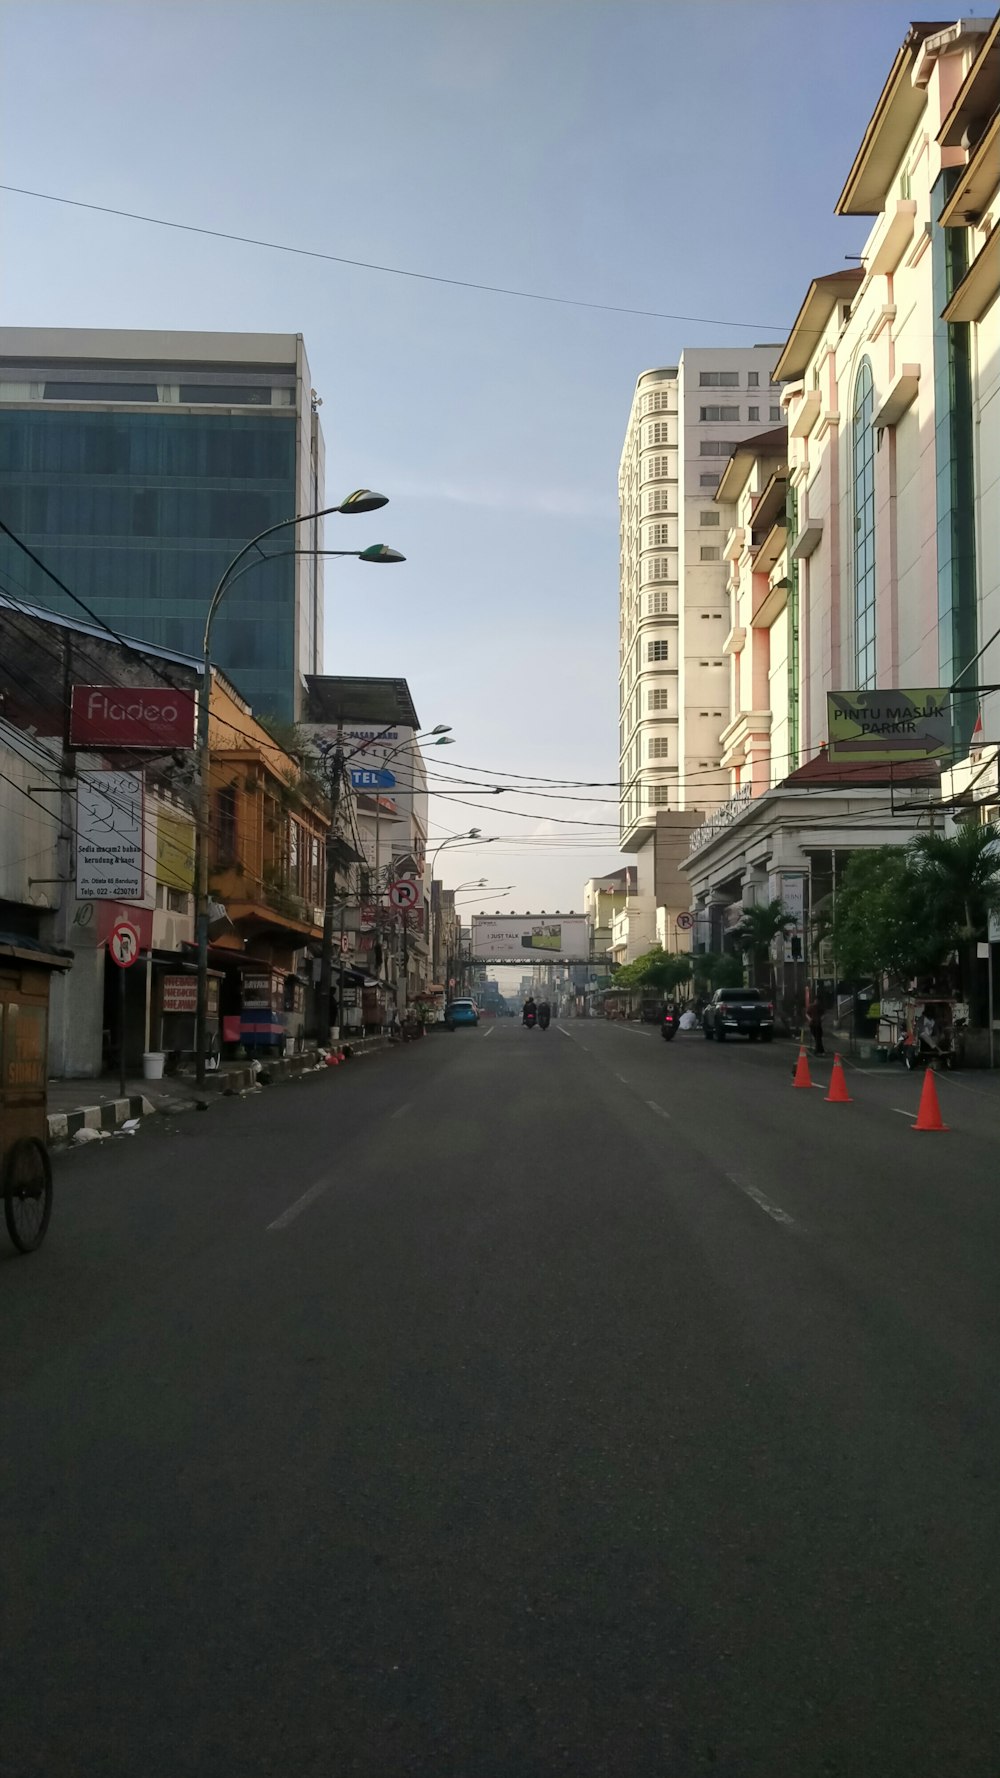 Eine leere Straße in einer Stadt mit hohen Gebäuden